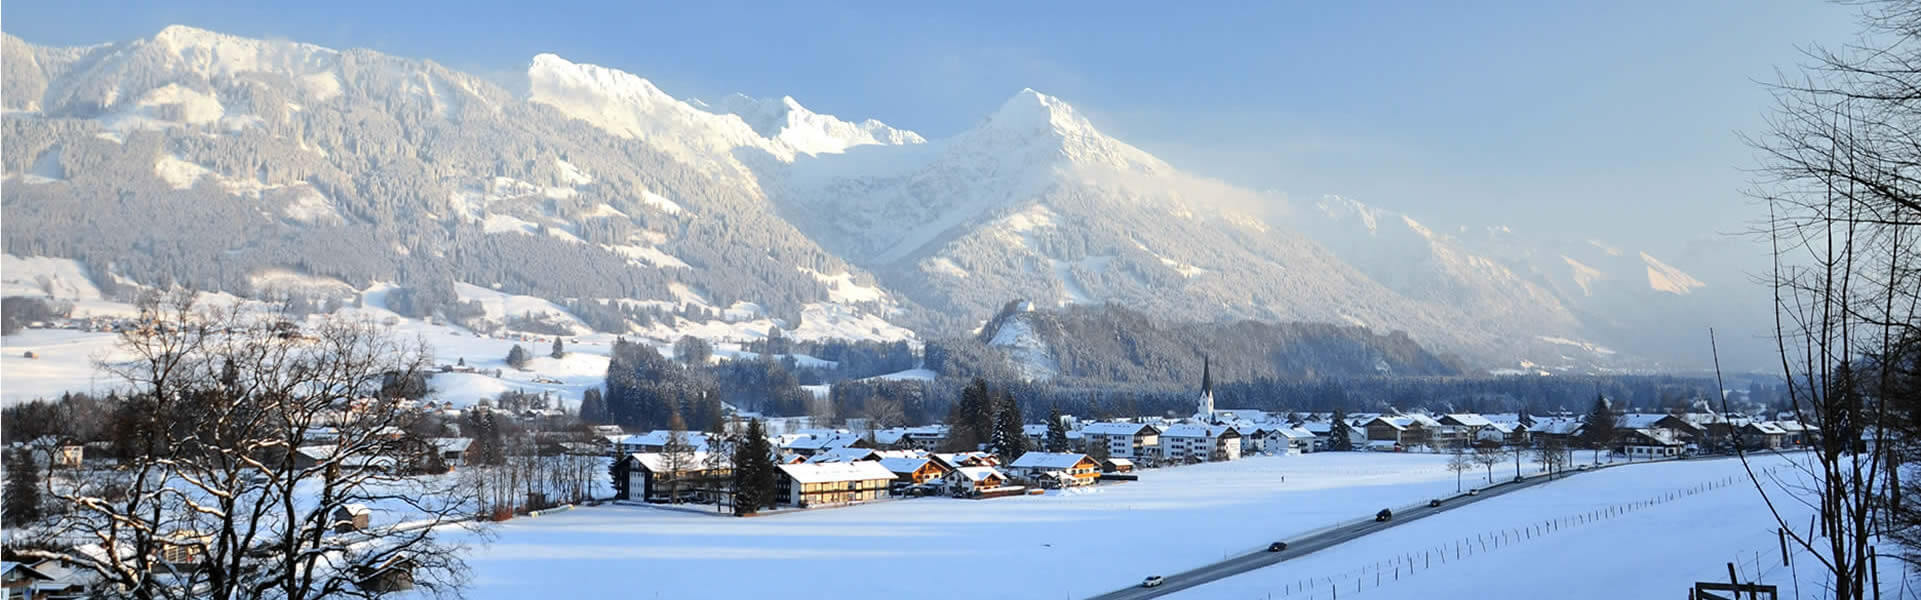 Wintersport und Winterwandern rund um's Nebelhorn